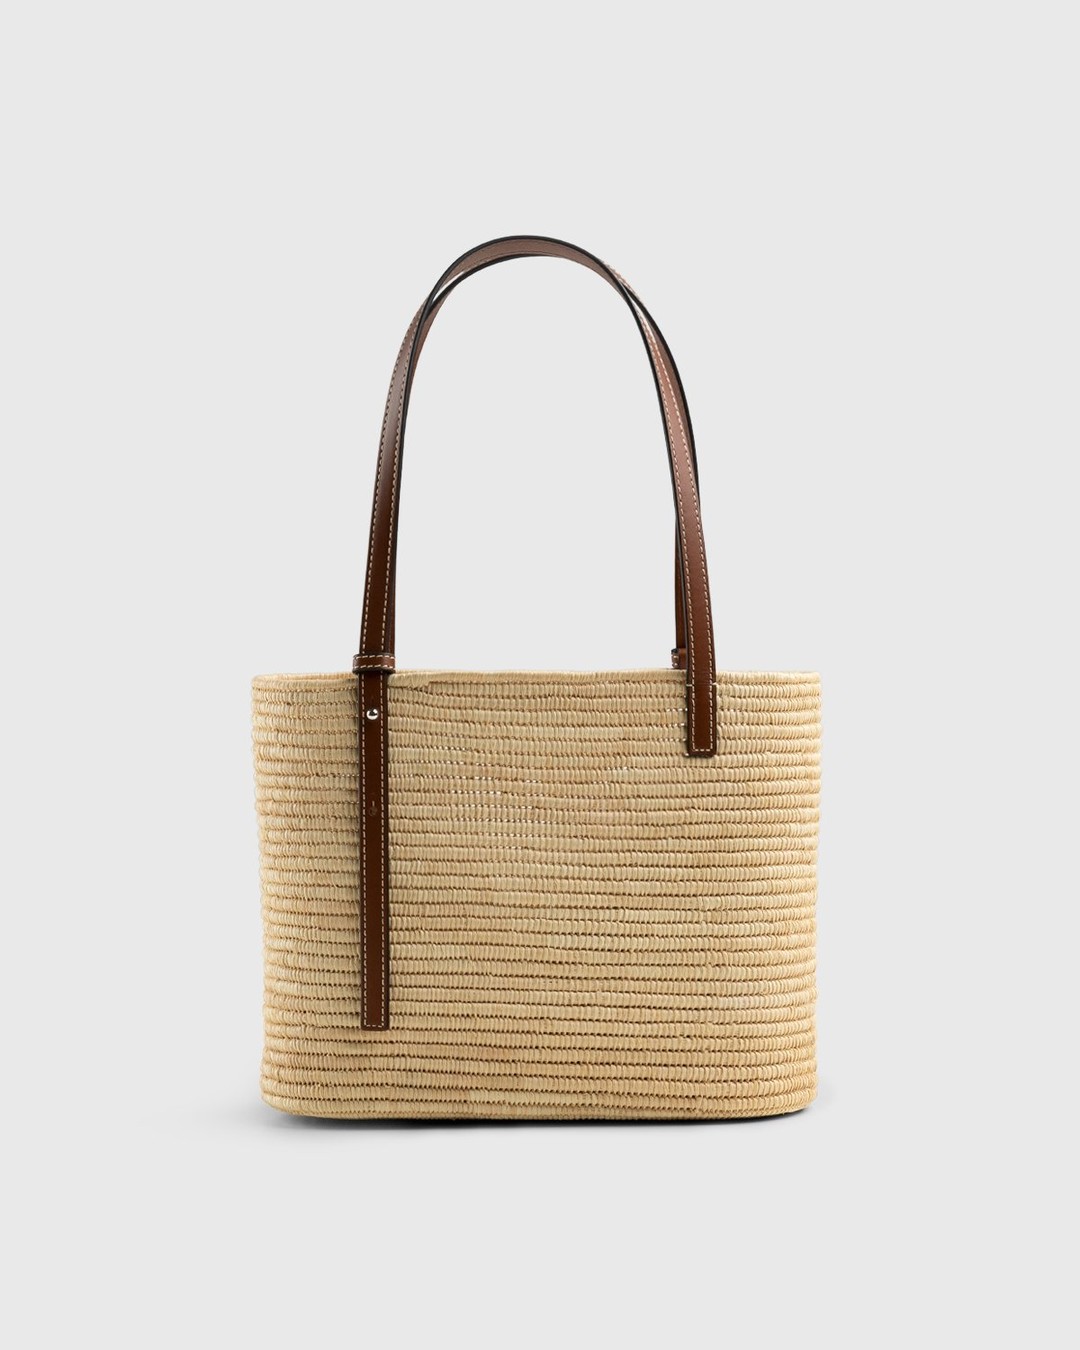 Loewe – Paula's Ibiza Small Square Basket Bag Natural/Pecan - Shoulder Bags - Beige - Image 2